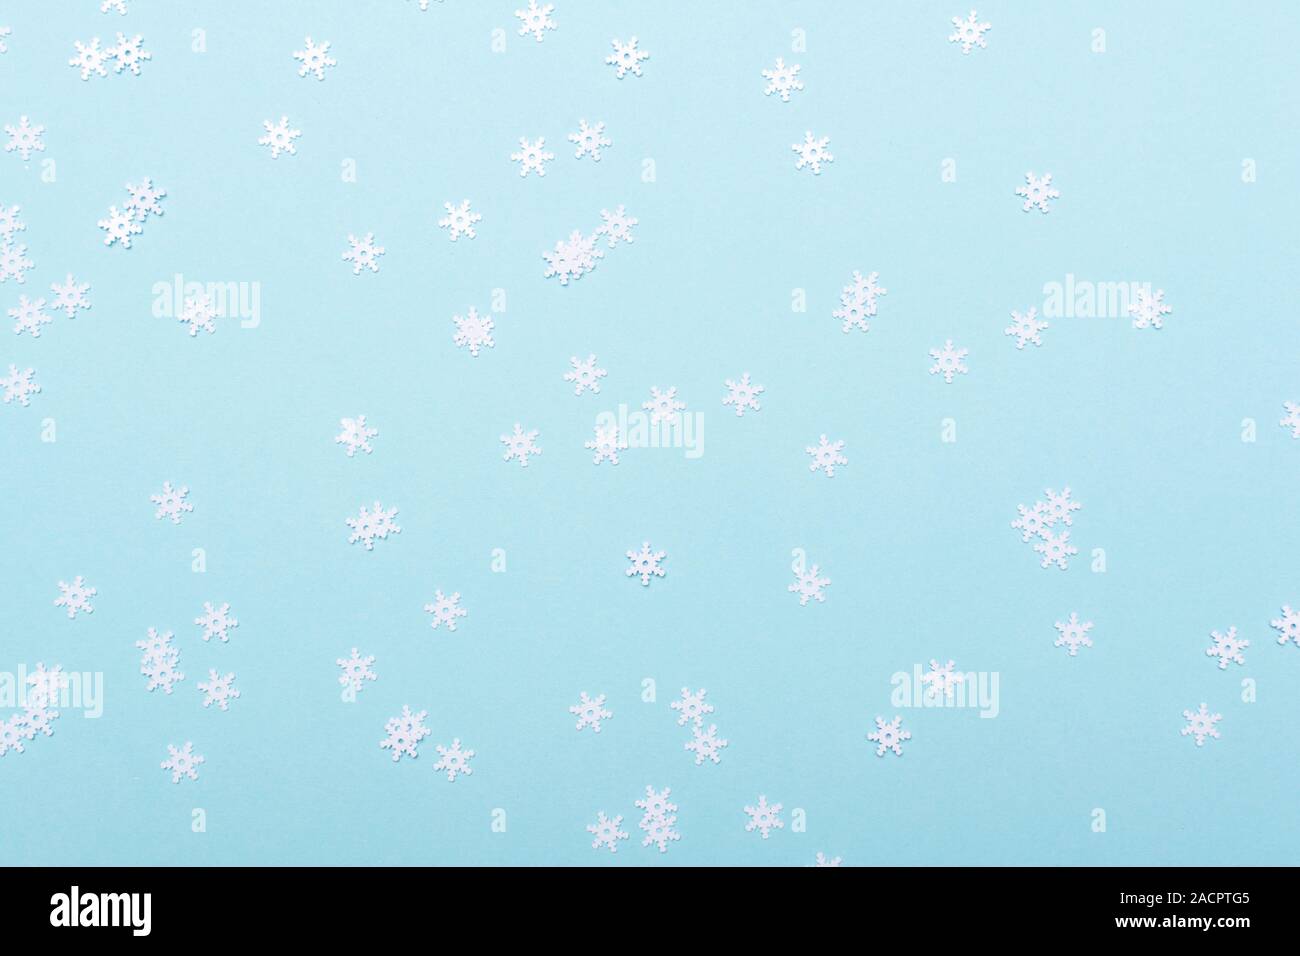 Weiß glitzernd Schneeflocken Konfetti auf dem blauen Hintergrund verstreut, Kopieren, selektiven Fokus Stockfoto